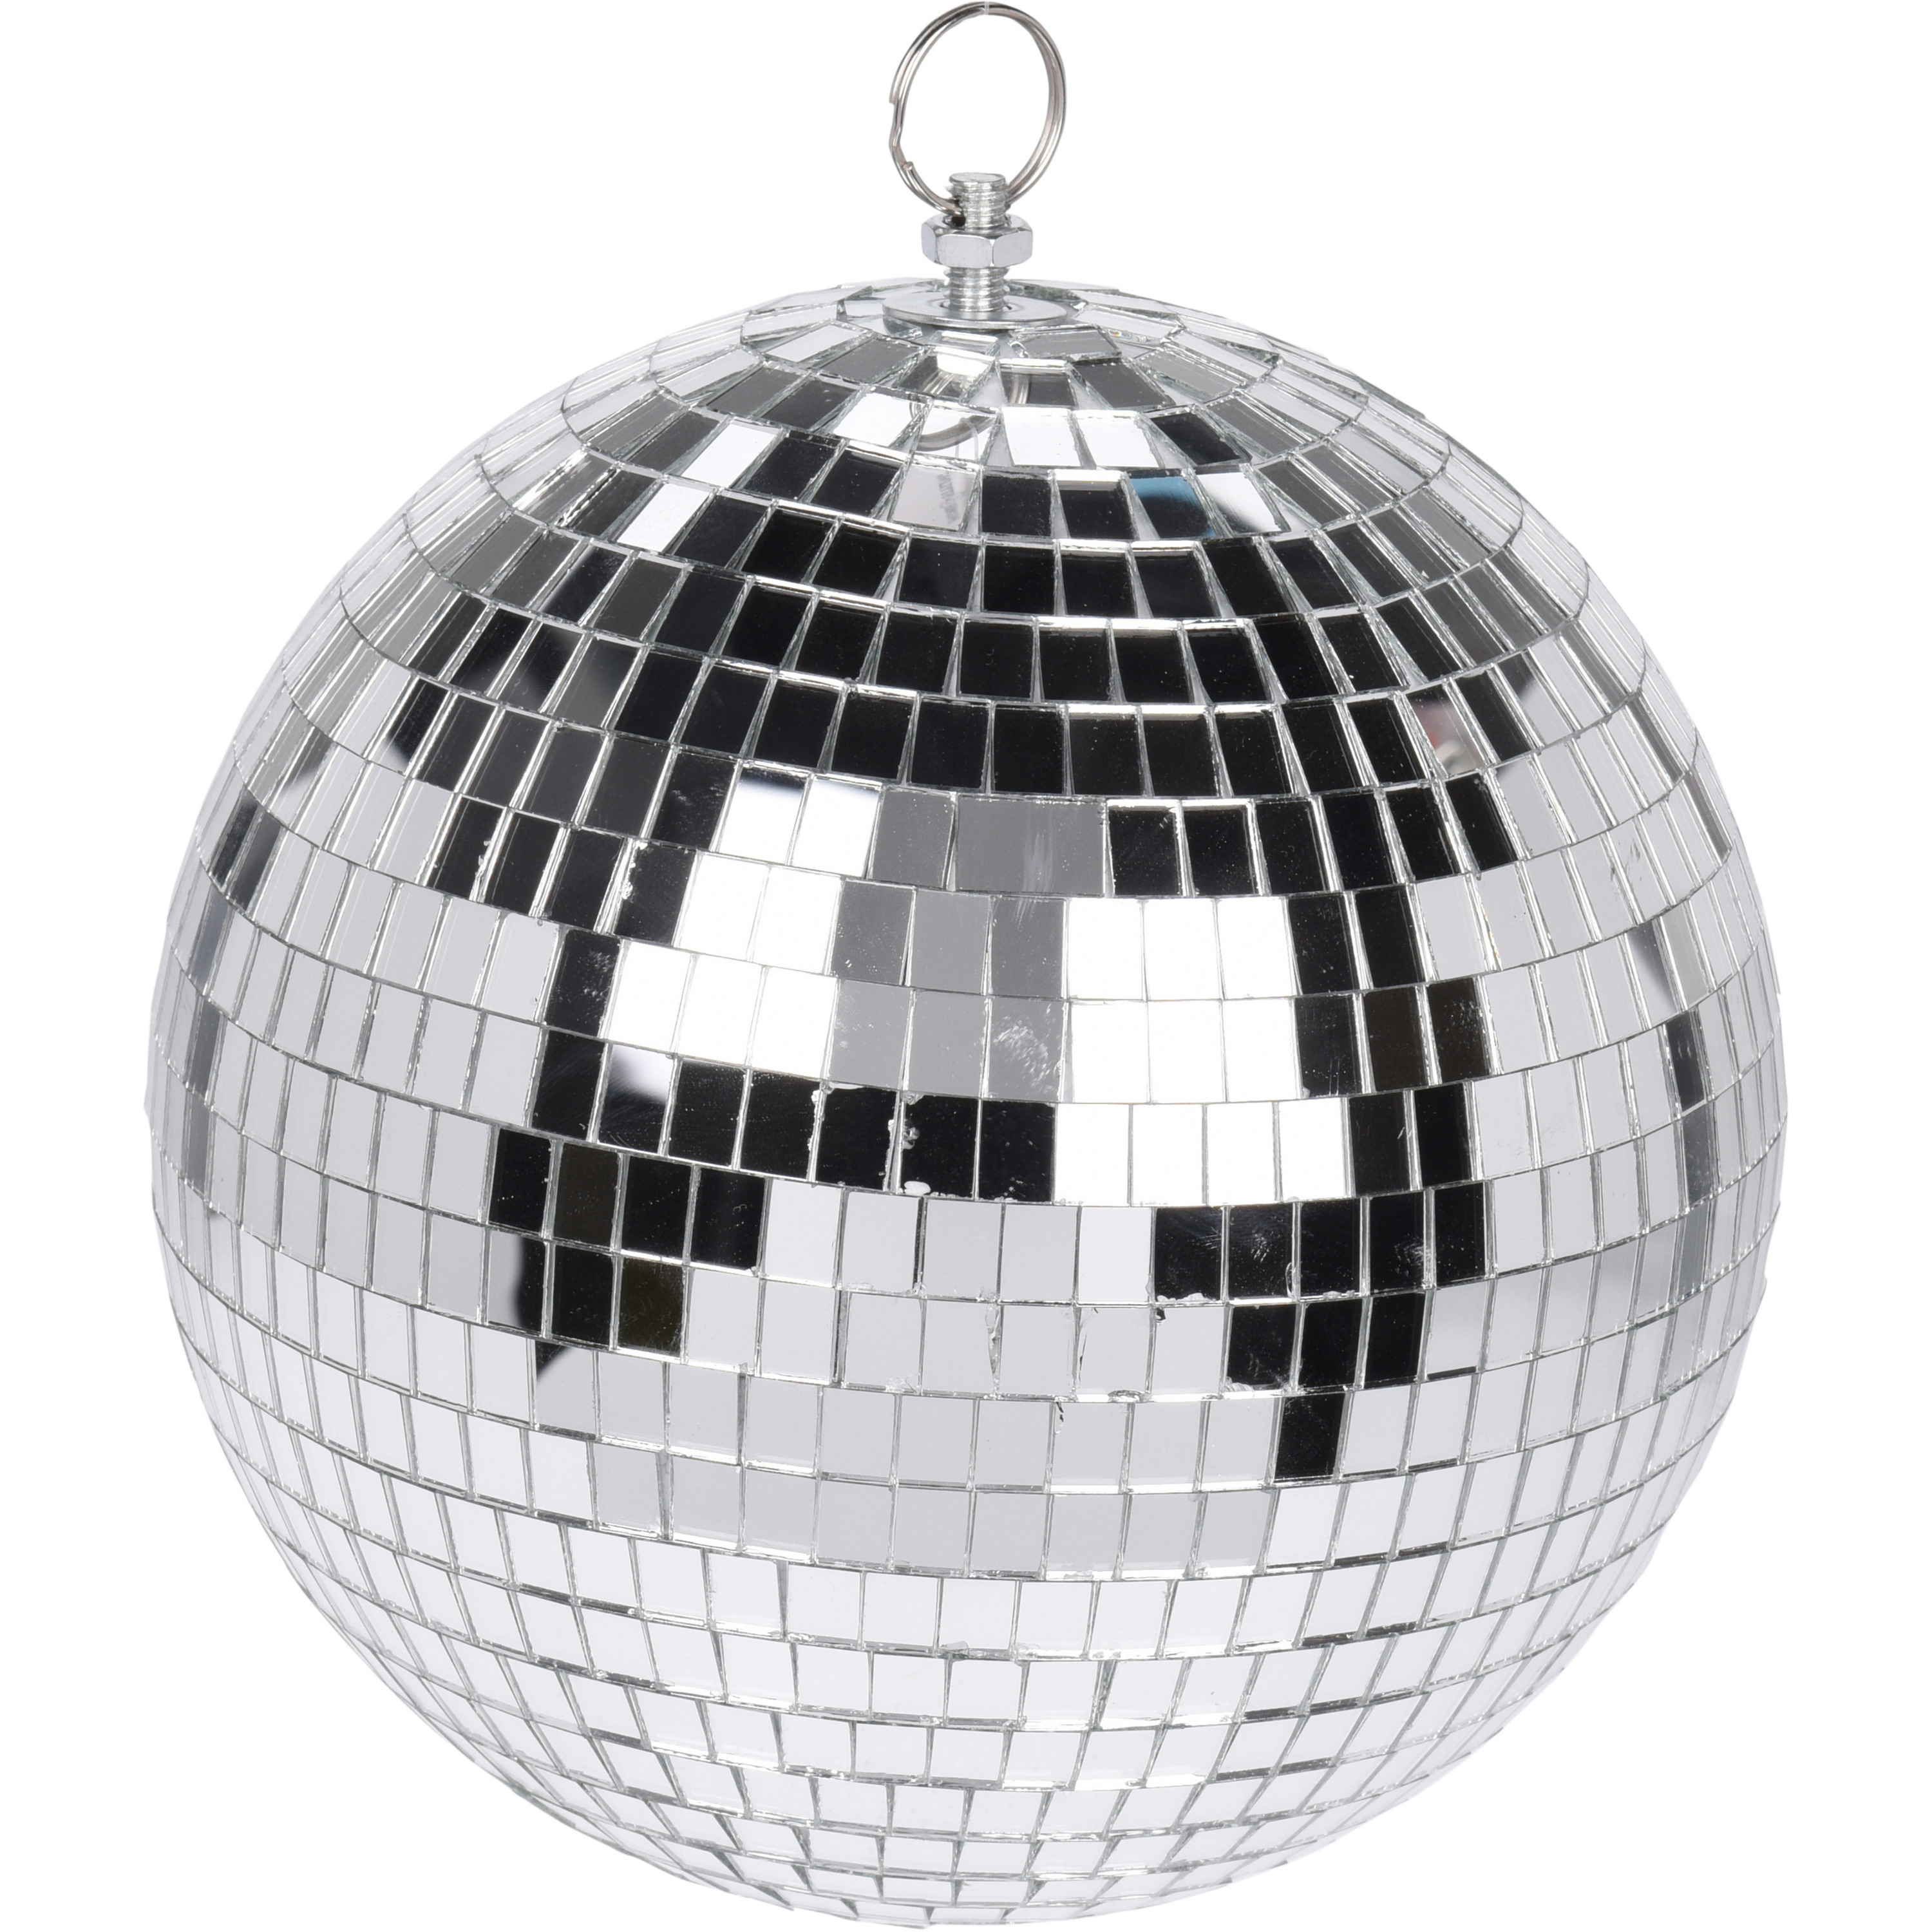 1x Grote zilveren disco kerstballen discoballen-discobollen glas-foam 18 cm